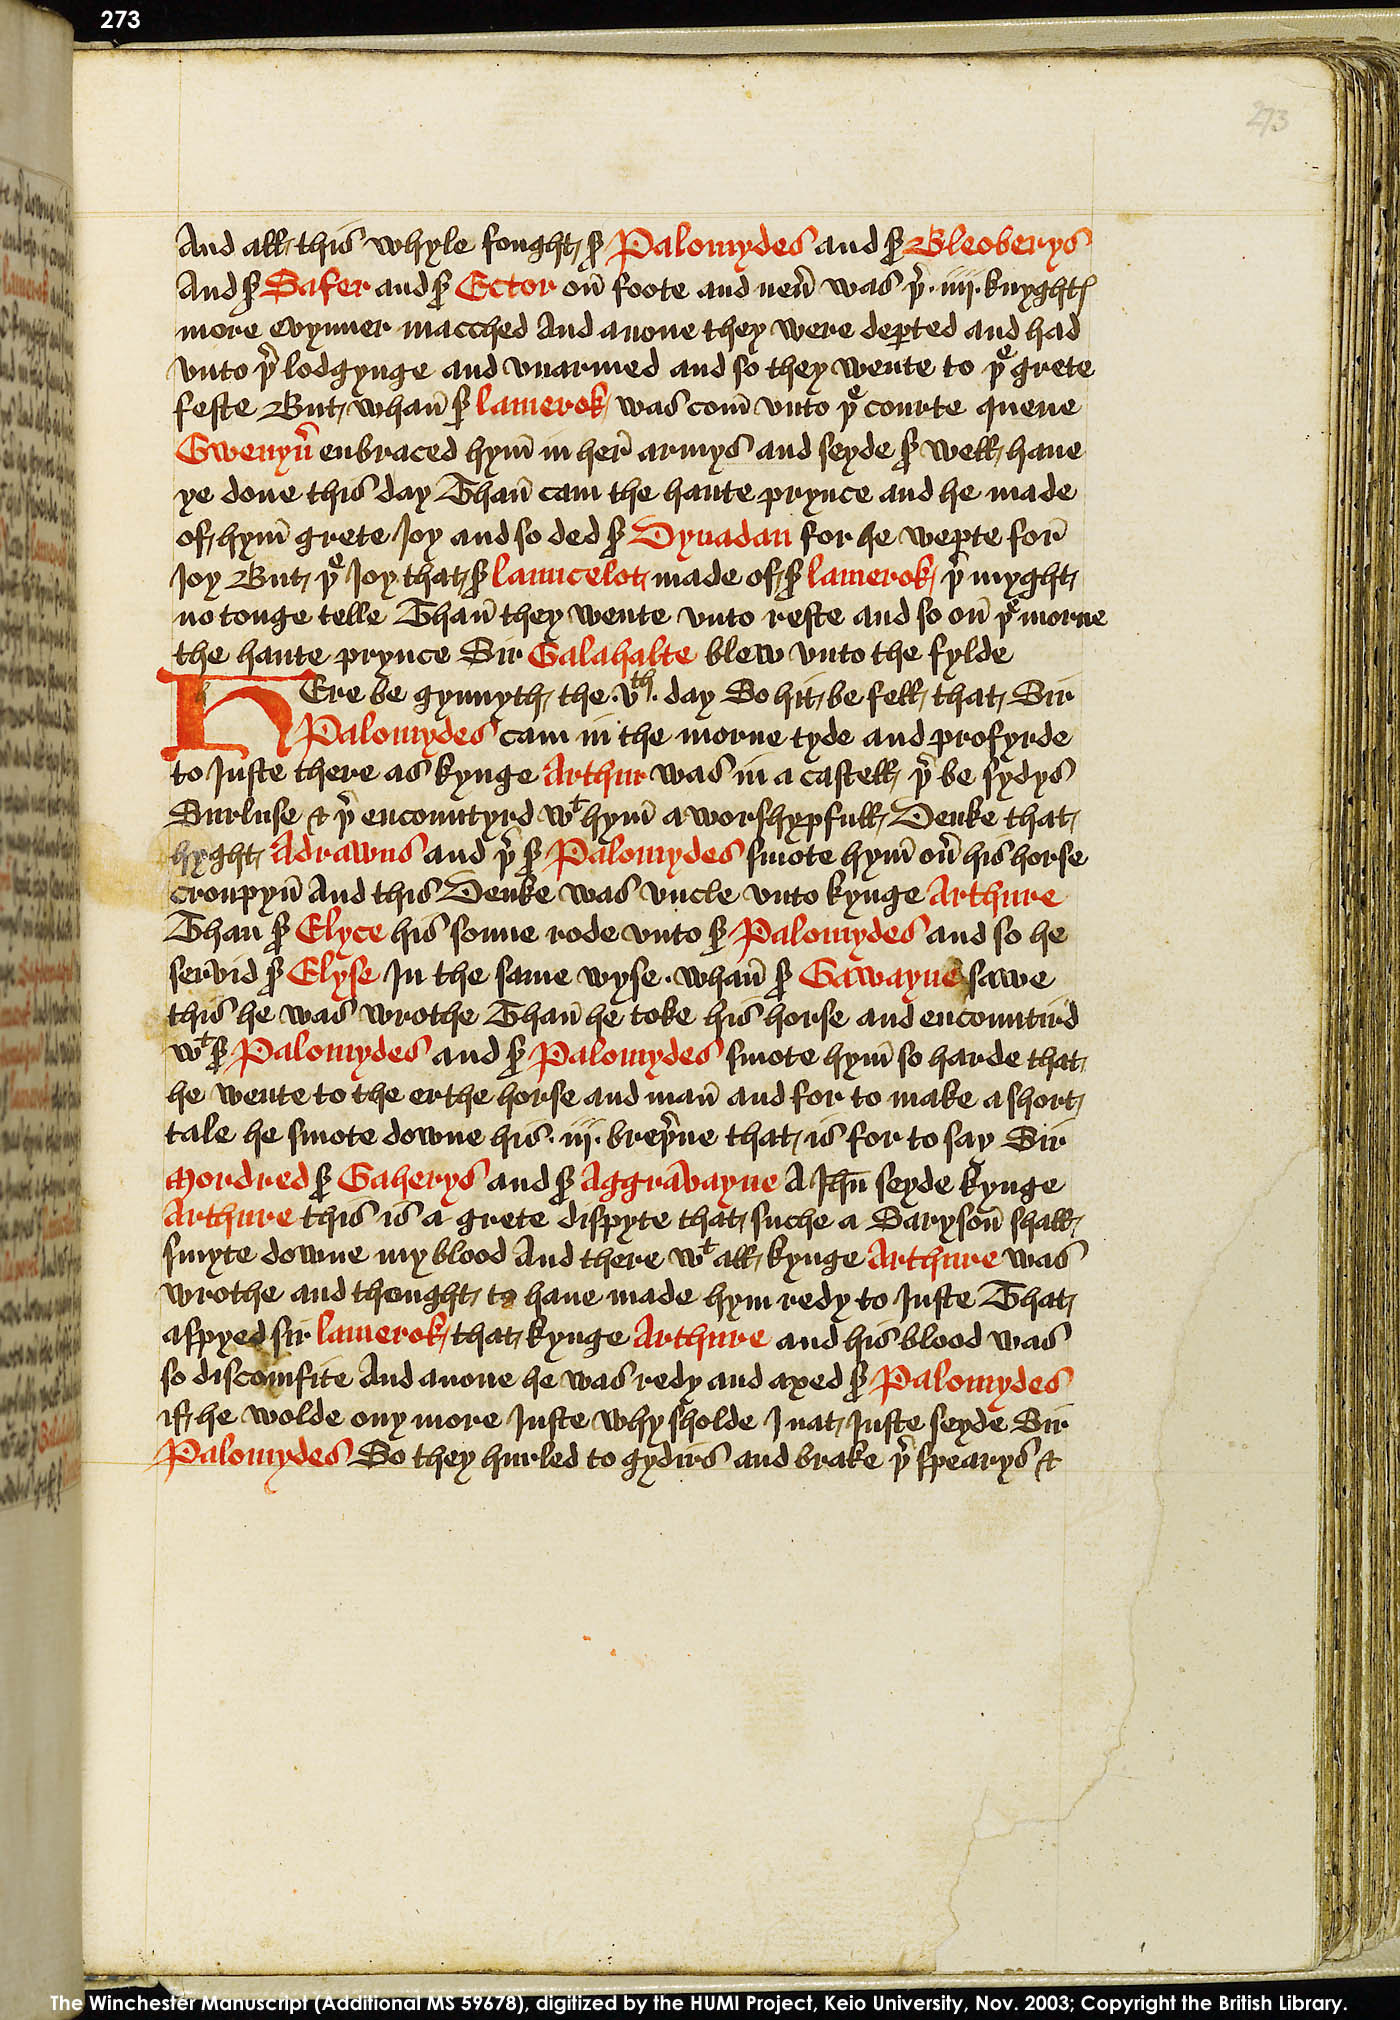 Folio 273r